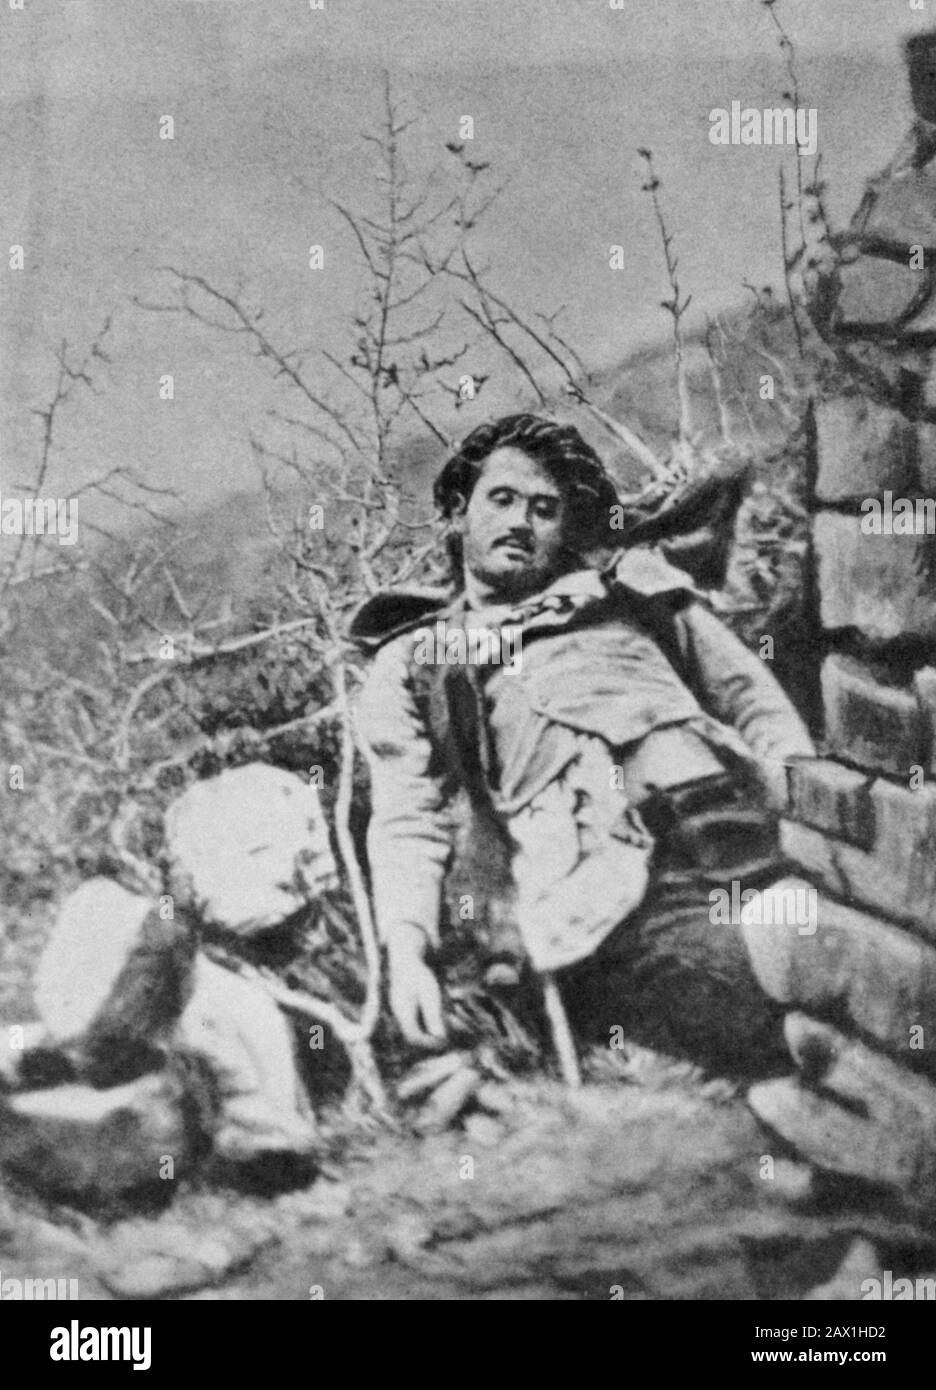 1864 , Frusci, Avigliano , Potenza , Basilicata , ITALY : The italian outlaw GIUSEPPE NICOLA SUMMA aka NINCO-NANCO , collaborator of outlaw CARMINE DONATELLO CROCCO , killed in a firefight with guards in Frusci , 13 march 1864 . - BANDITO - BANDITISMO - BRIGANTE -  OUTLAW - BRIGANTI - FUORILEGGE - BRIGANTAGGIO - rapinatori - rapinatore - assassino  - post mortem - morto - dead  ----  Archivio GBB Stock Photo